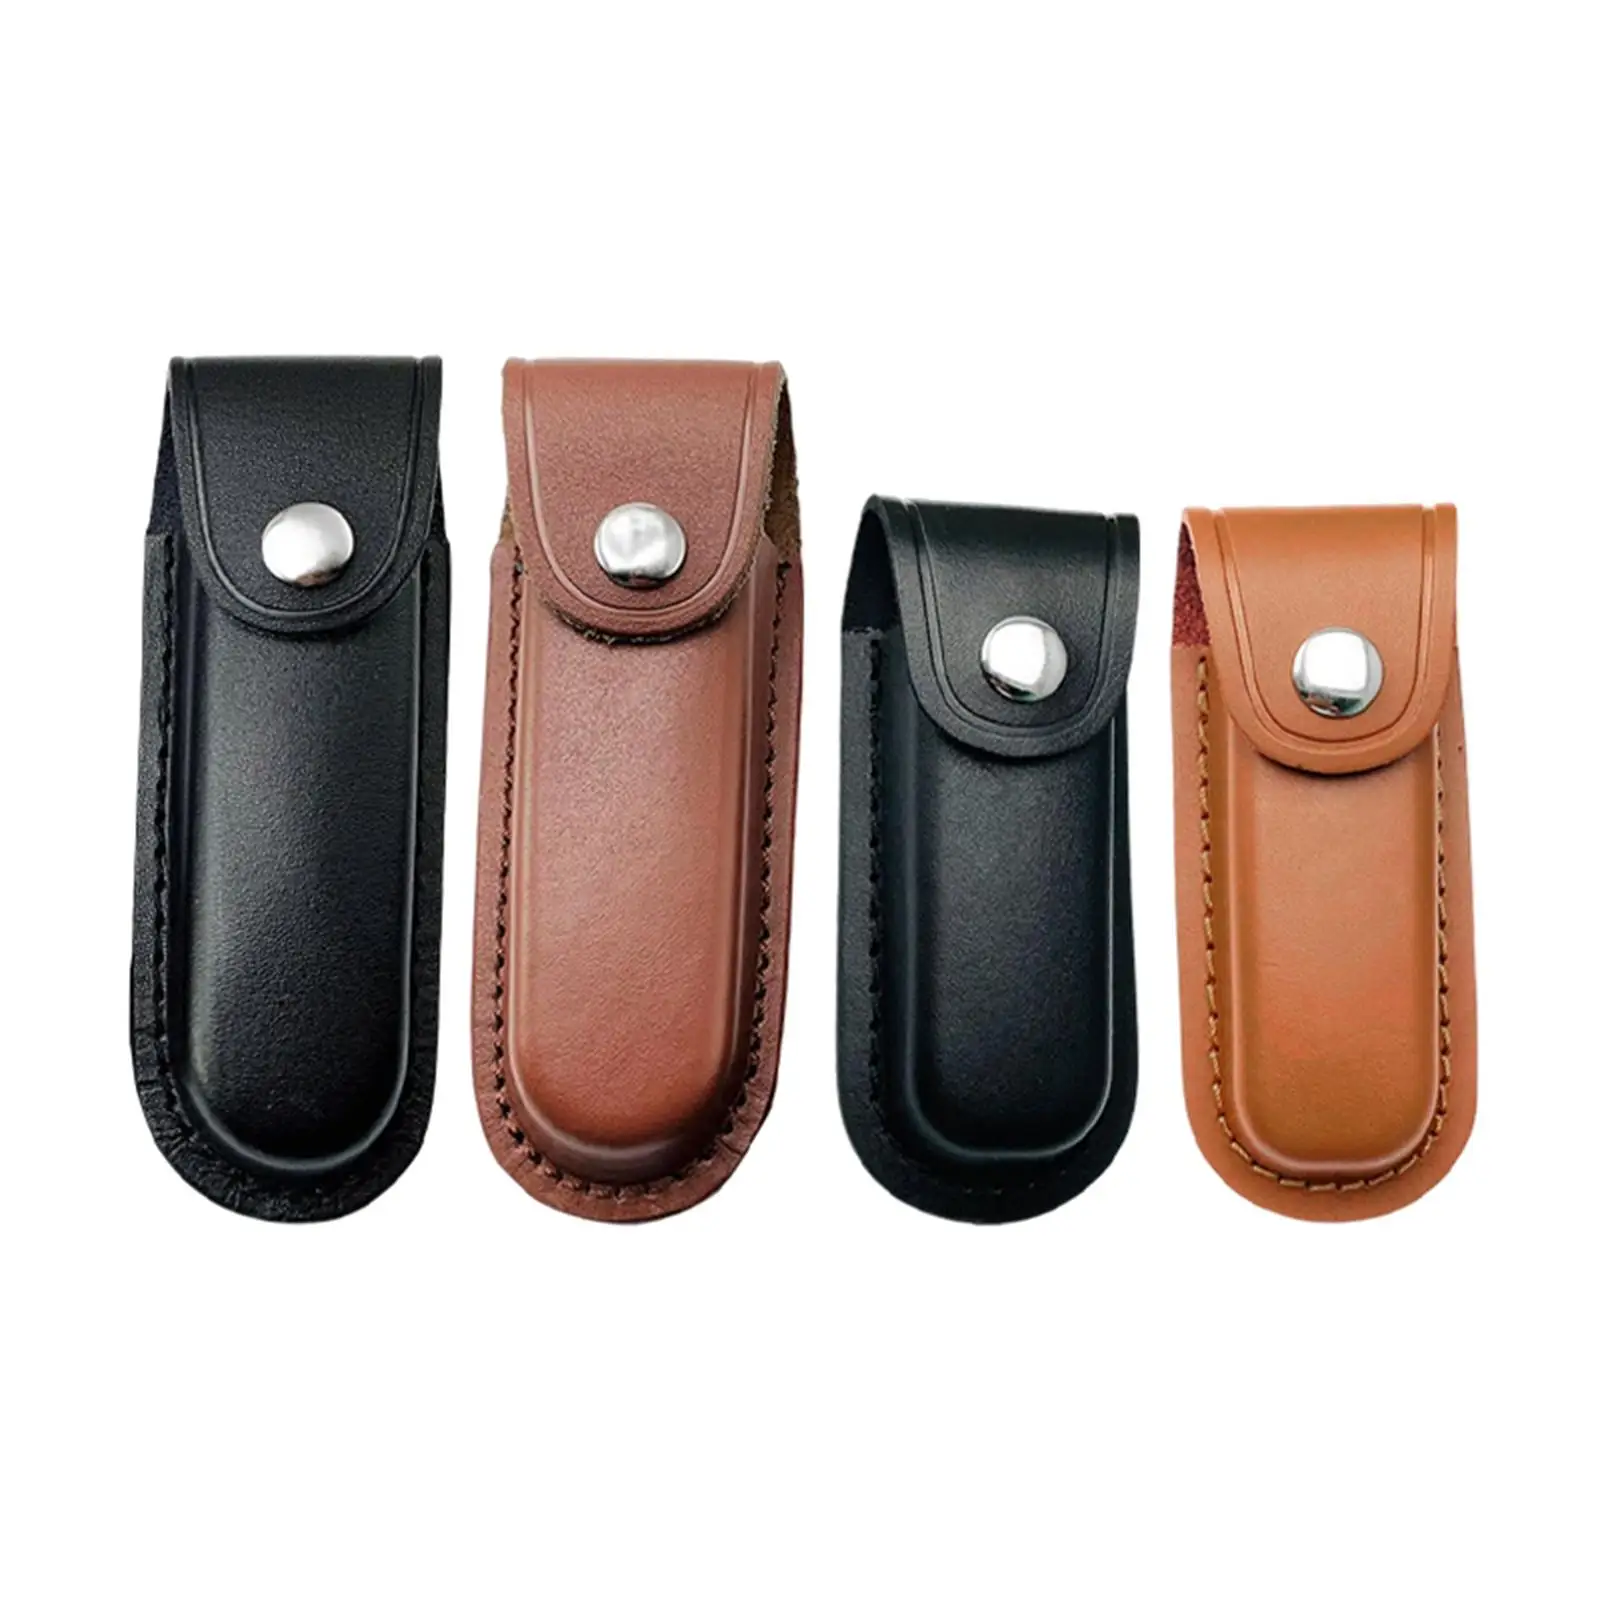 Snap Fastener Leather Folding Knife Carrying Holder Pouch Metal Rivets Scabbard Excellent Craftsmanship Holster Belt Durable Bag